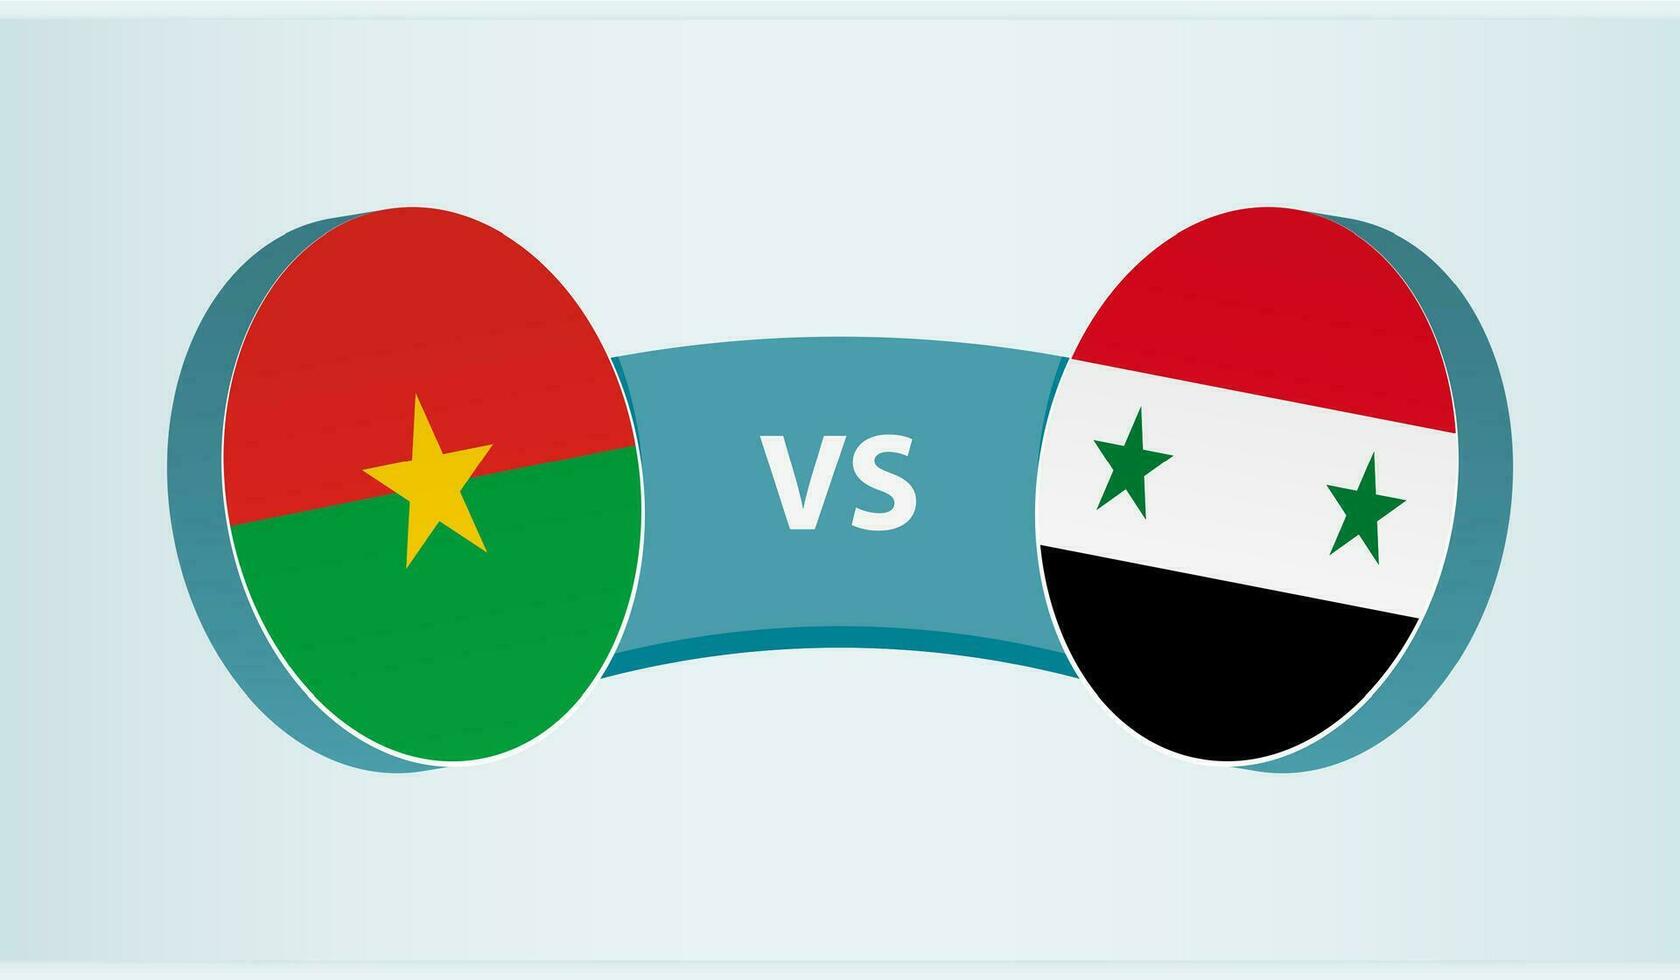 Burkina faso mot syrien, team sporter konkurrens begrepp. vektor